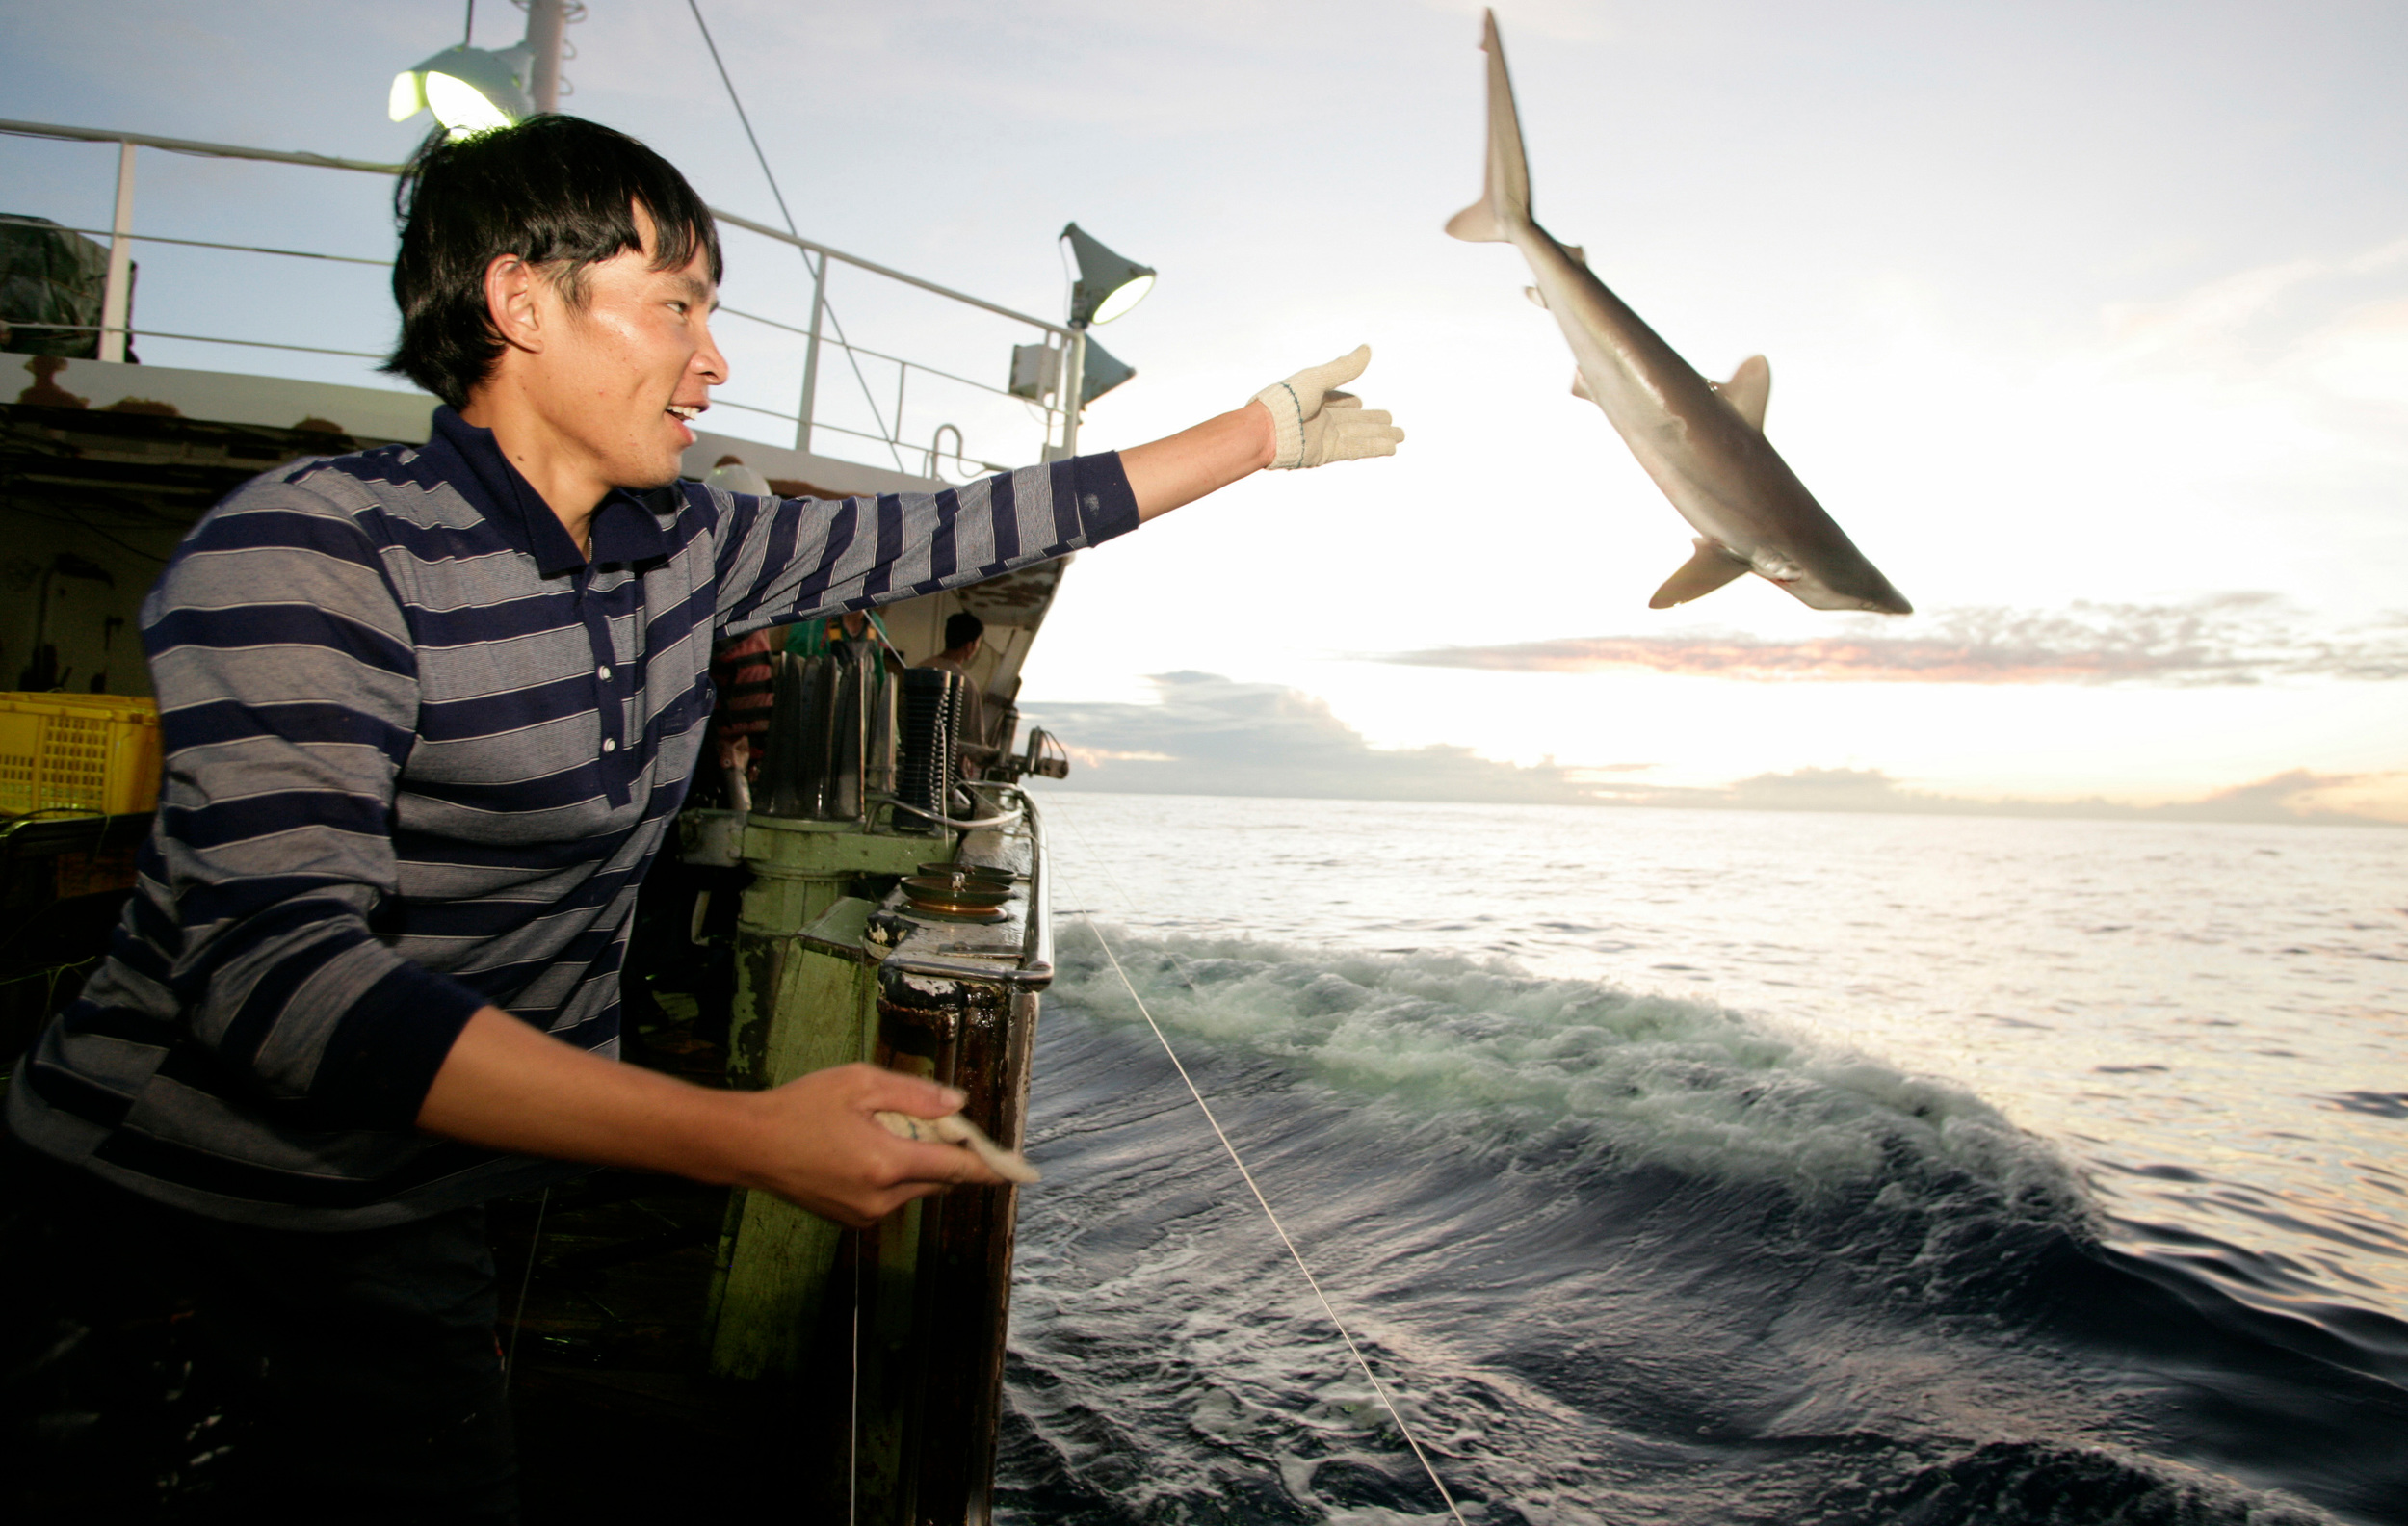 ο ψαράς πετάει τον καρχαρία από το πλοίο